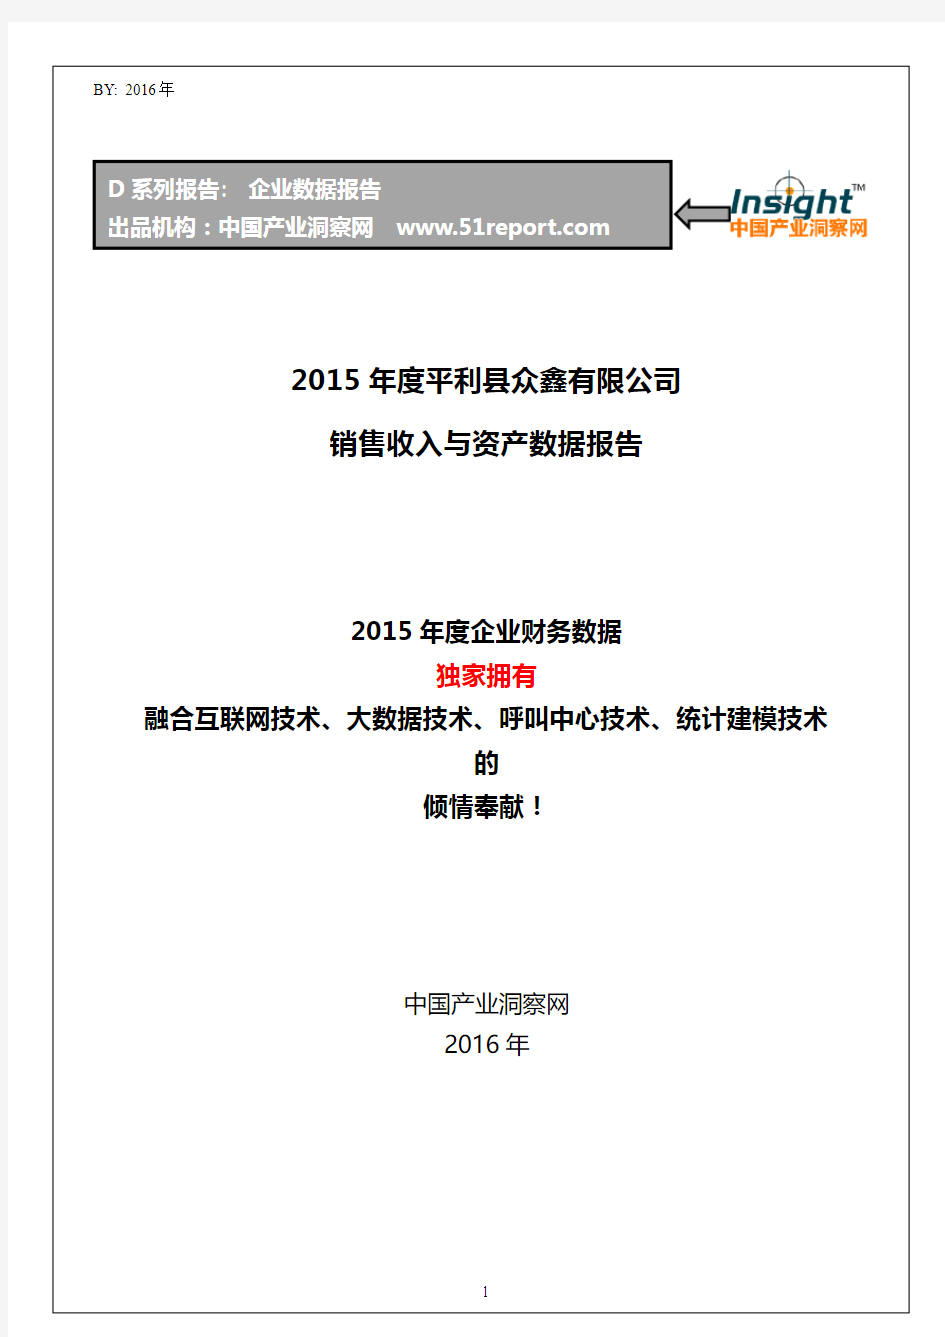 2015年度平利县众鑫有限公司销售收入与资产数据报告